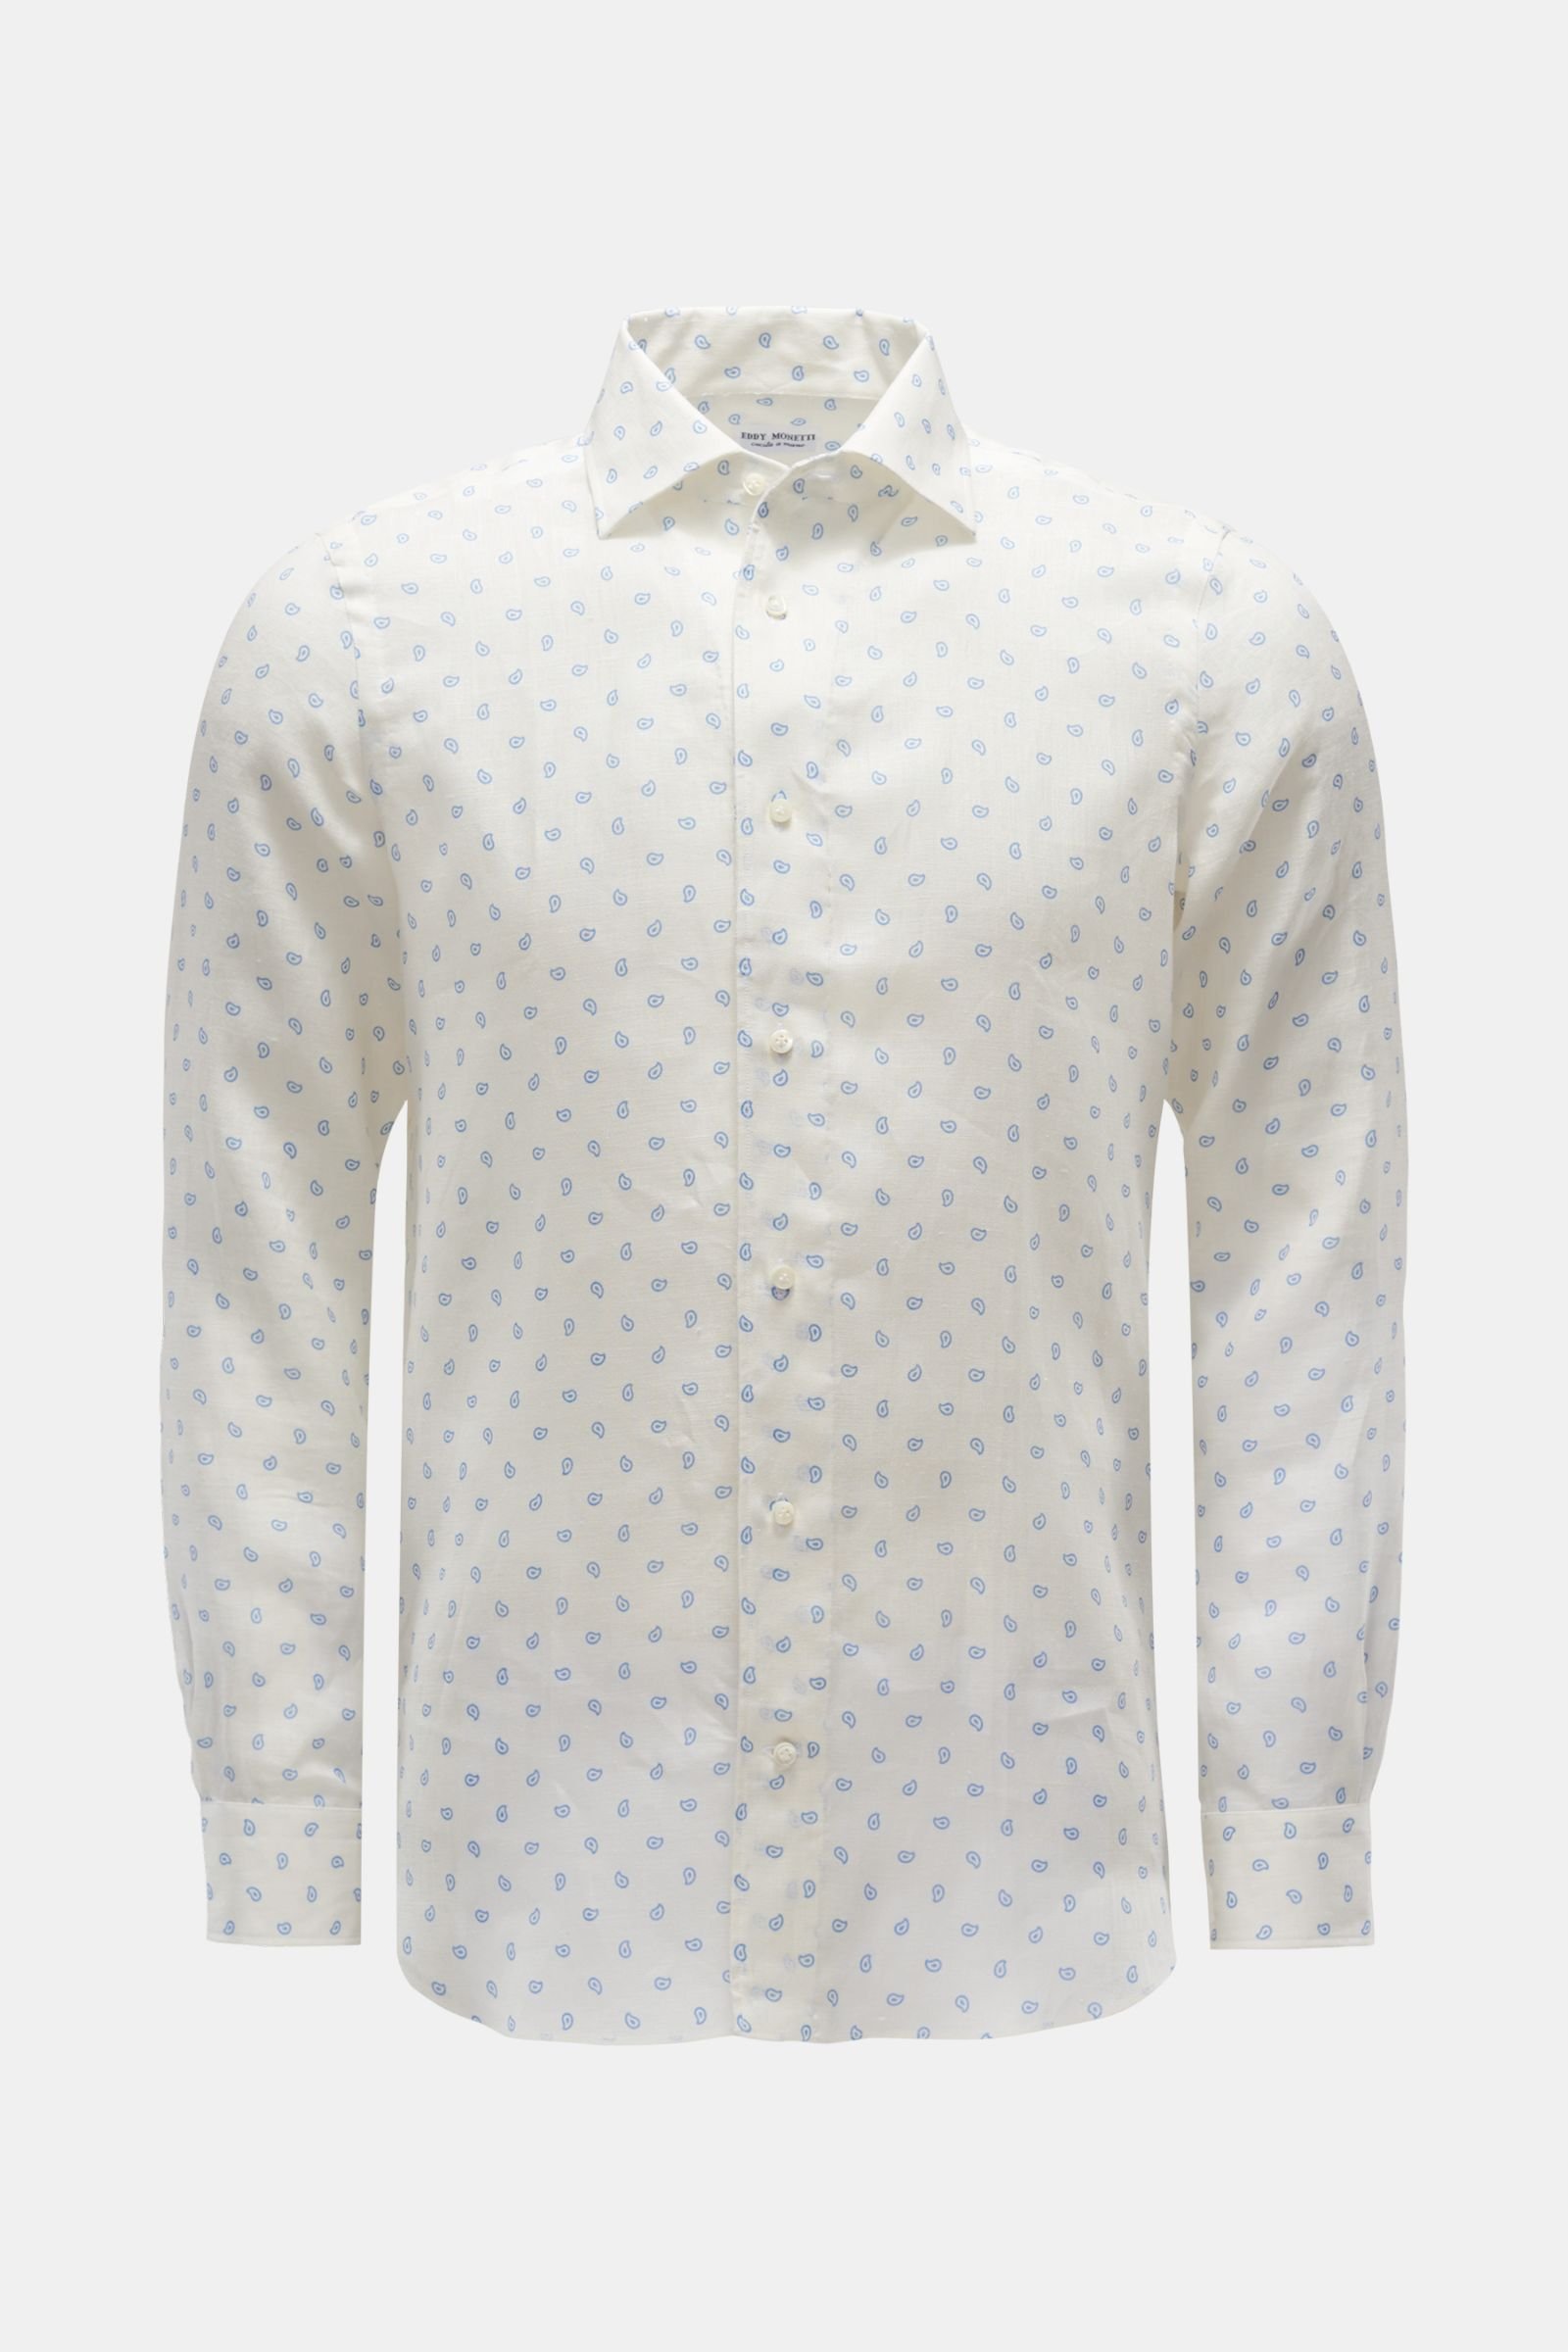 Linen shirt Kent collar cream/light blue patterned